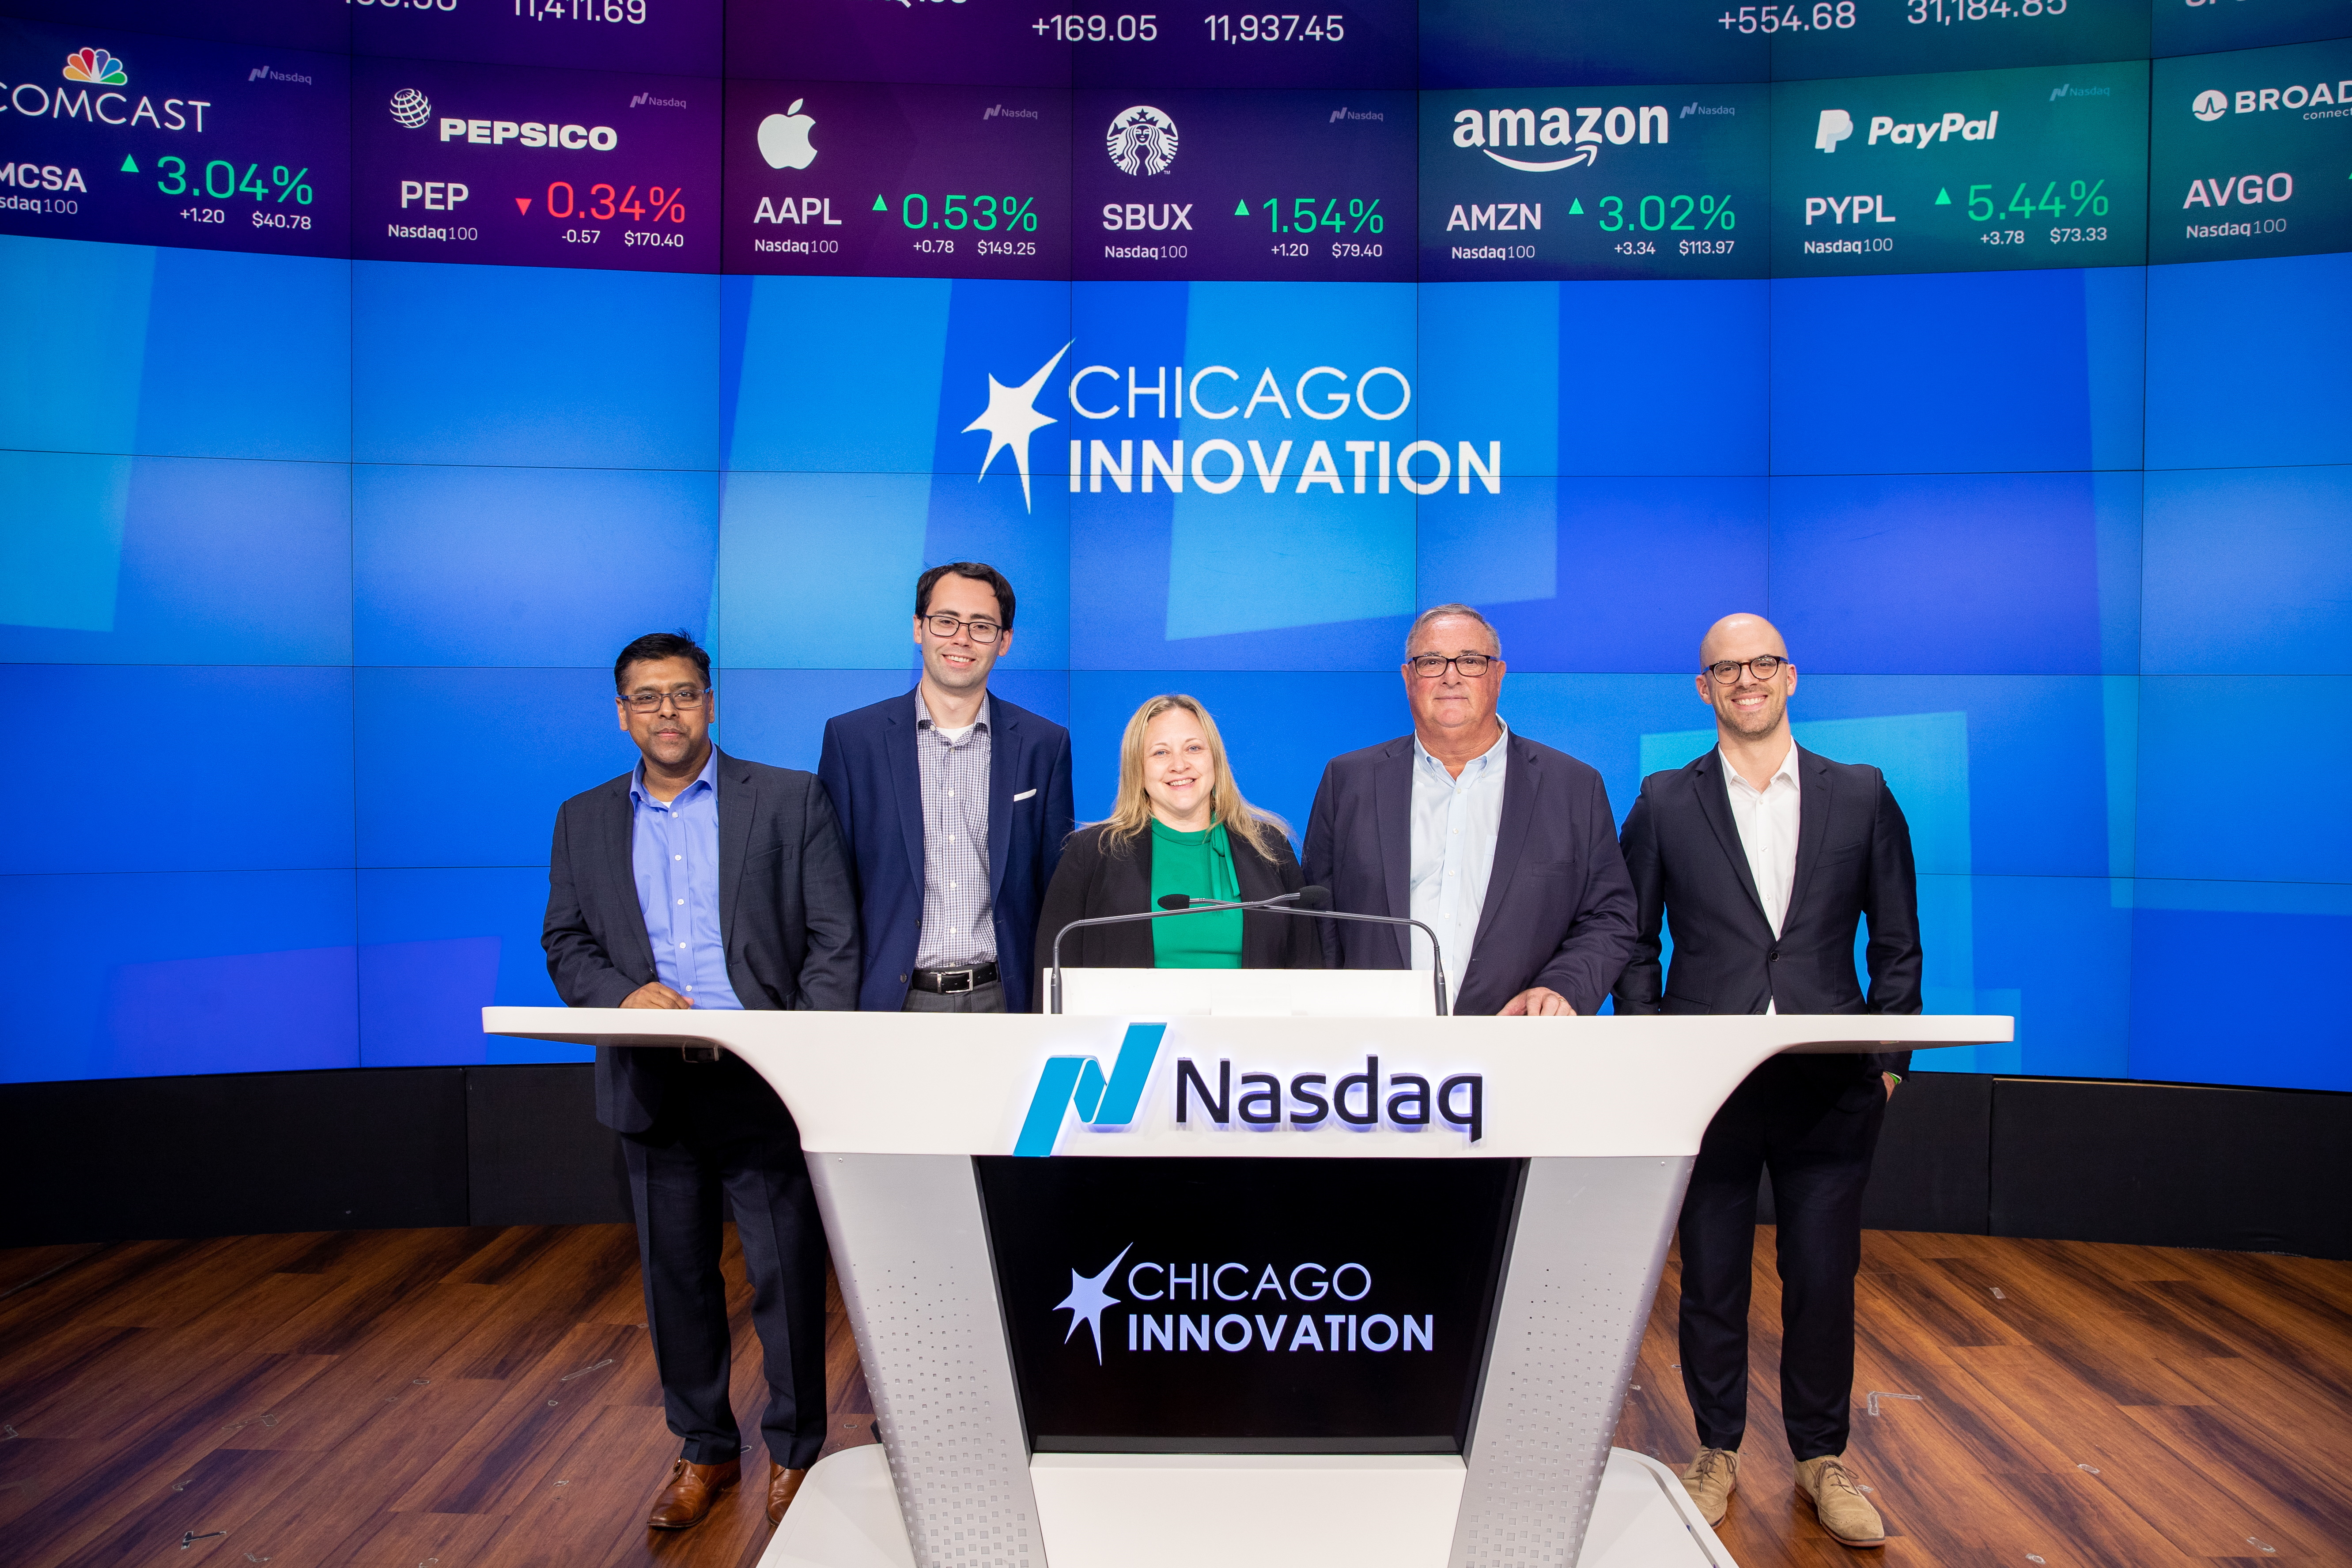 Chicago Innovation NASDAQ